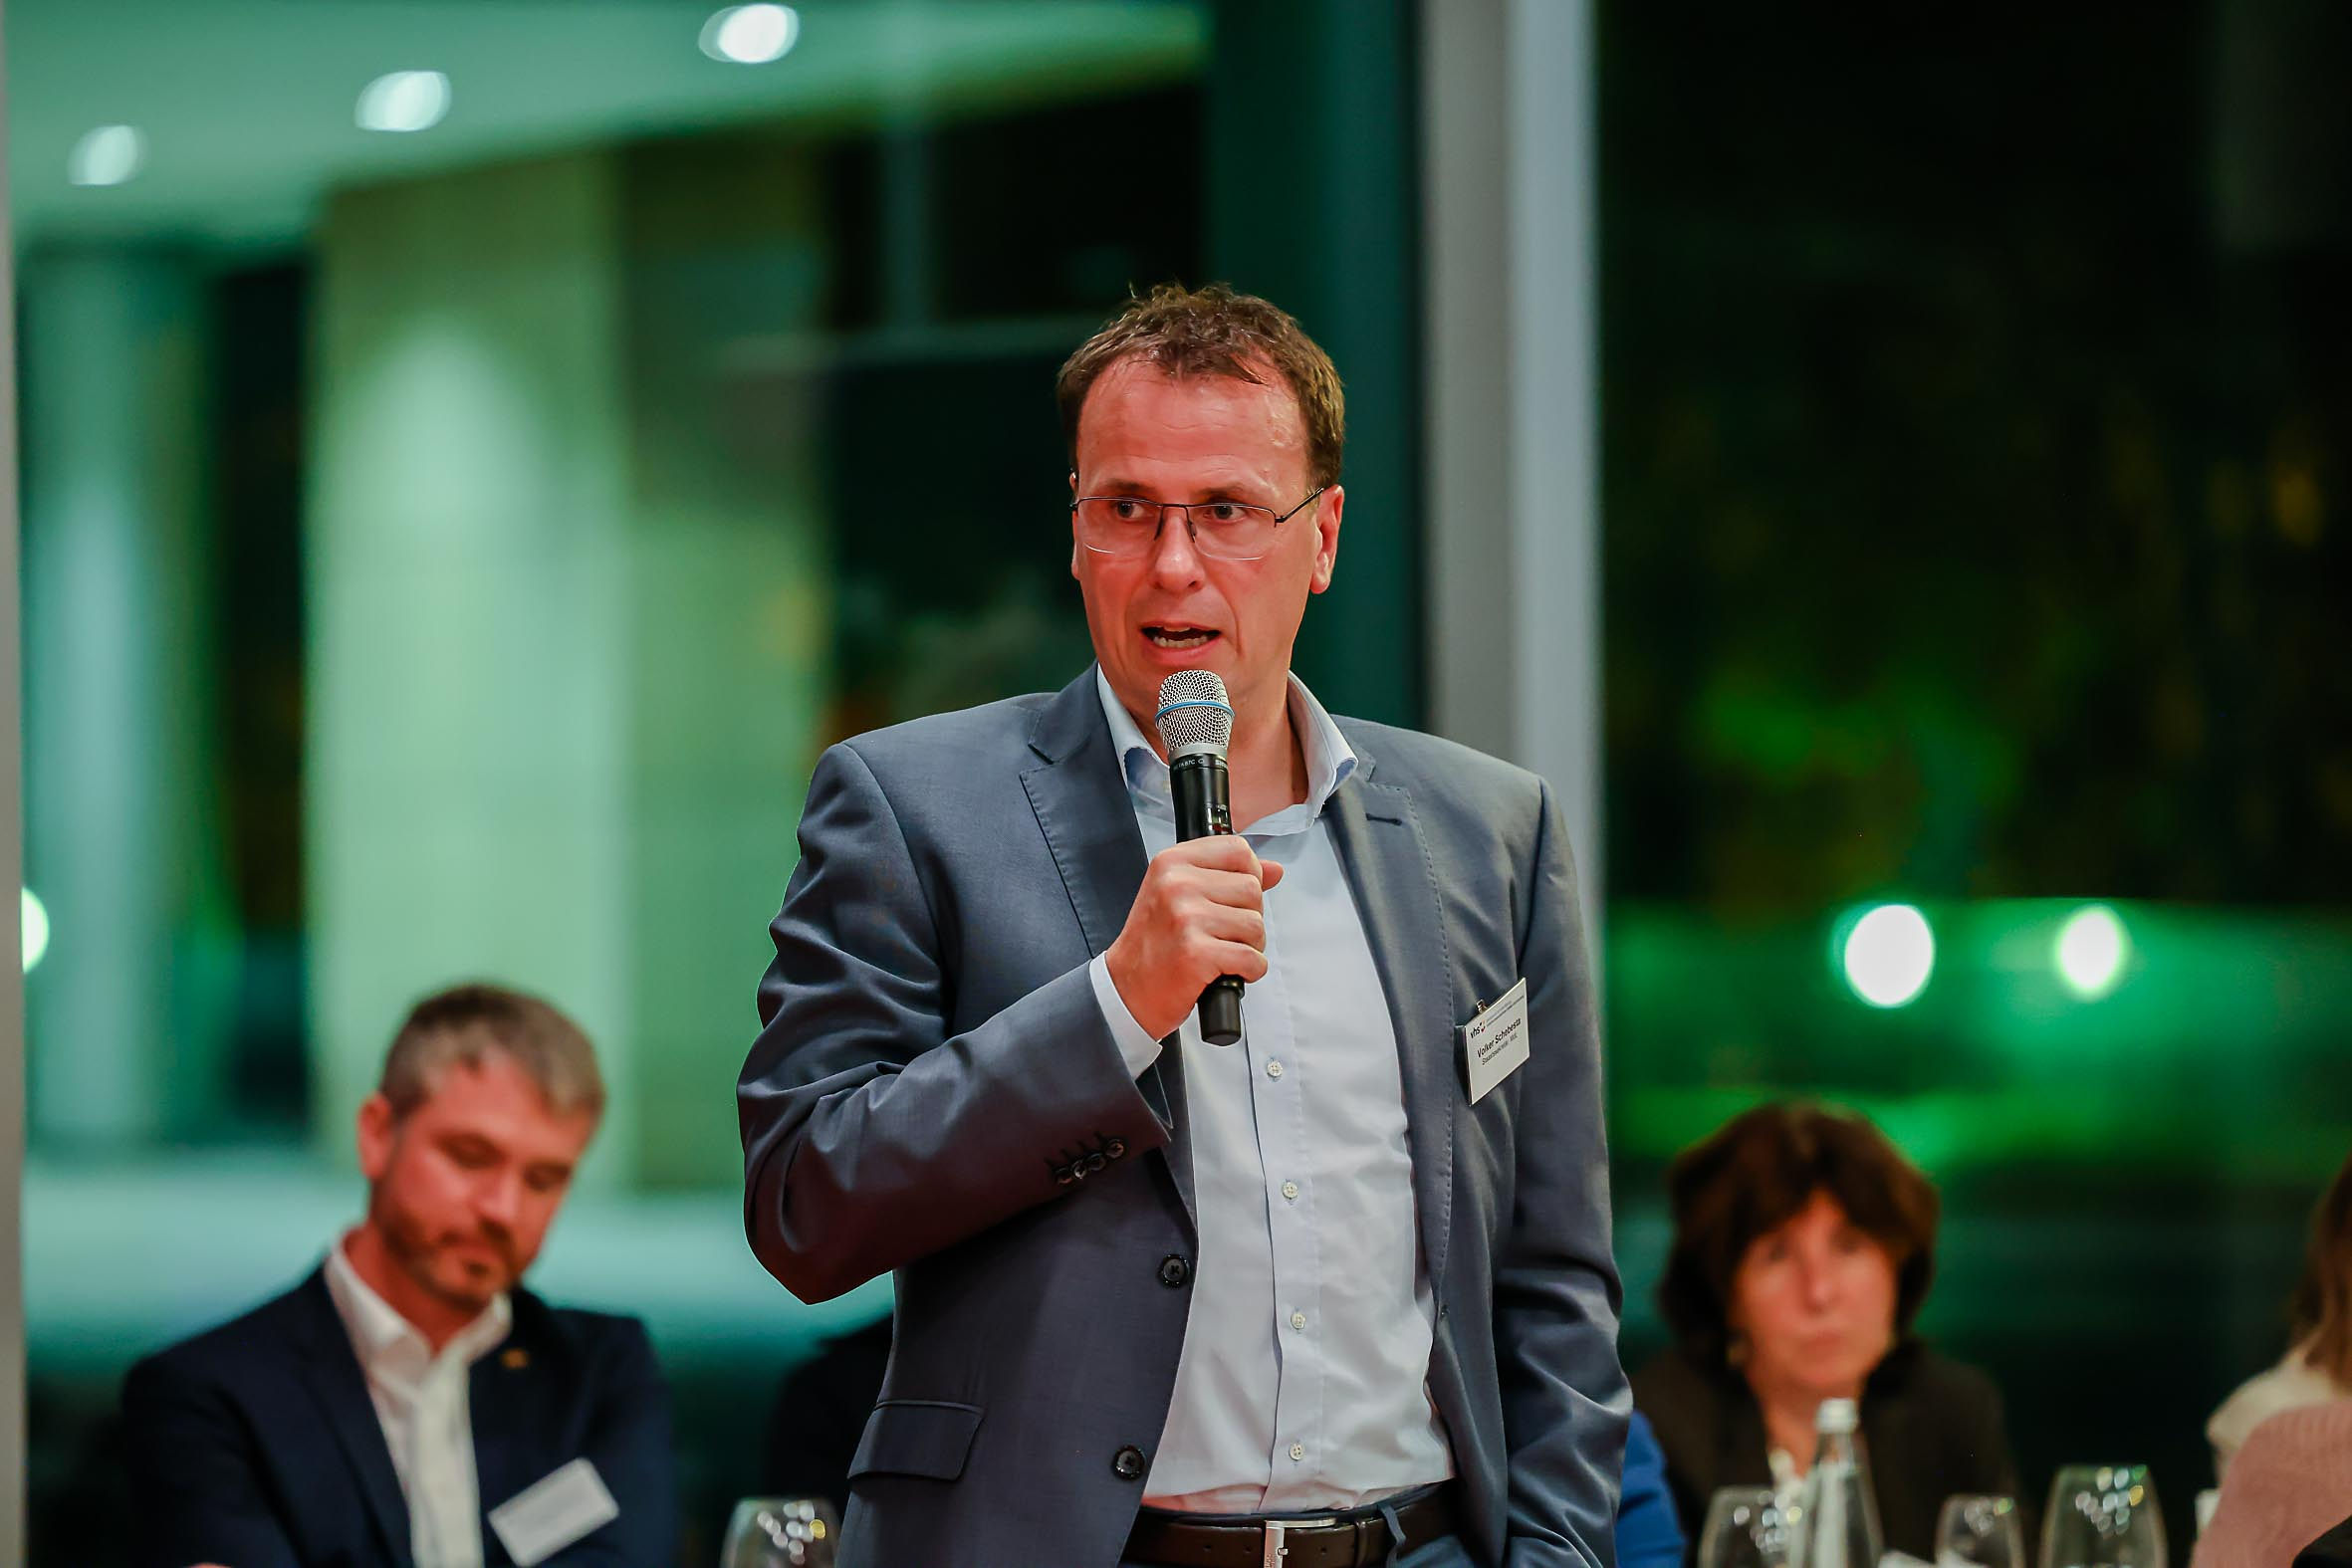 Foto: Staatssekretär Volker Schebesta am Mikrofon beim Parlamentarischen Abend 2022